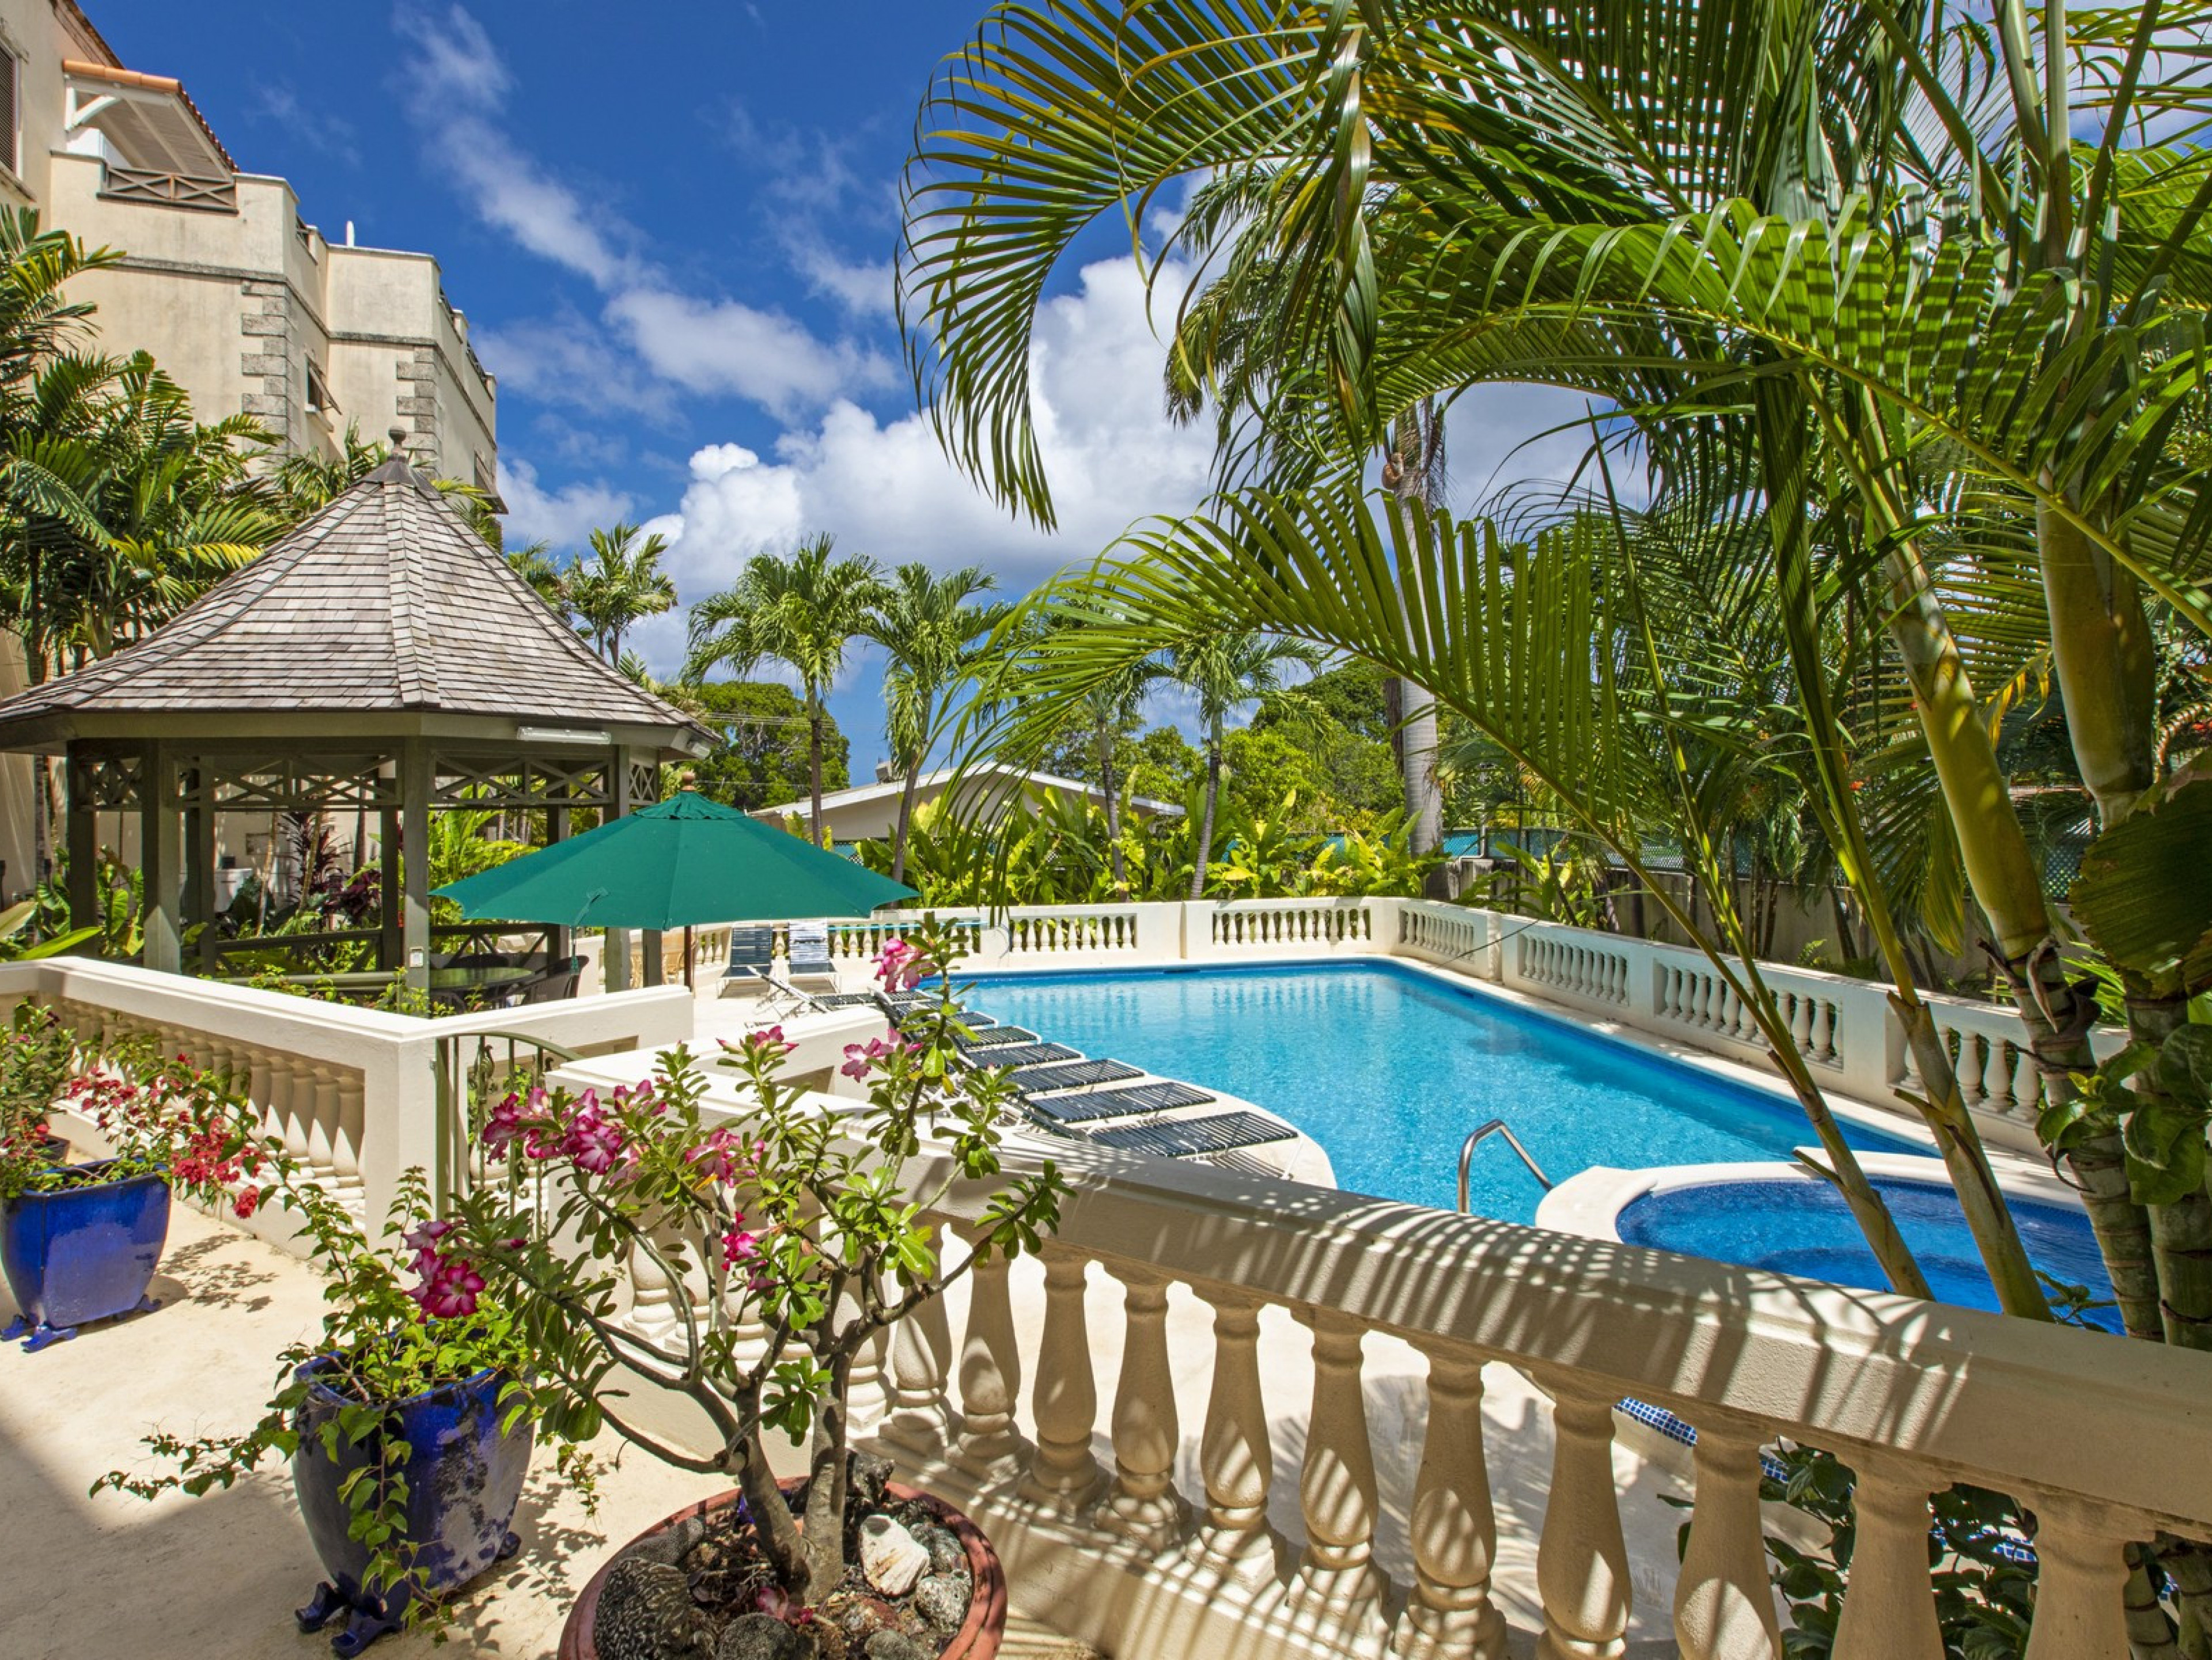 Summerland 201 Prospect Villas in Barbados